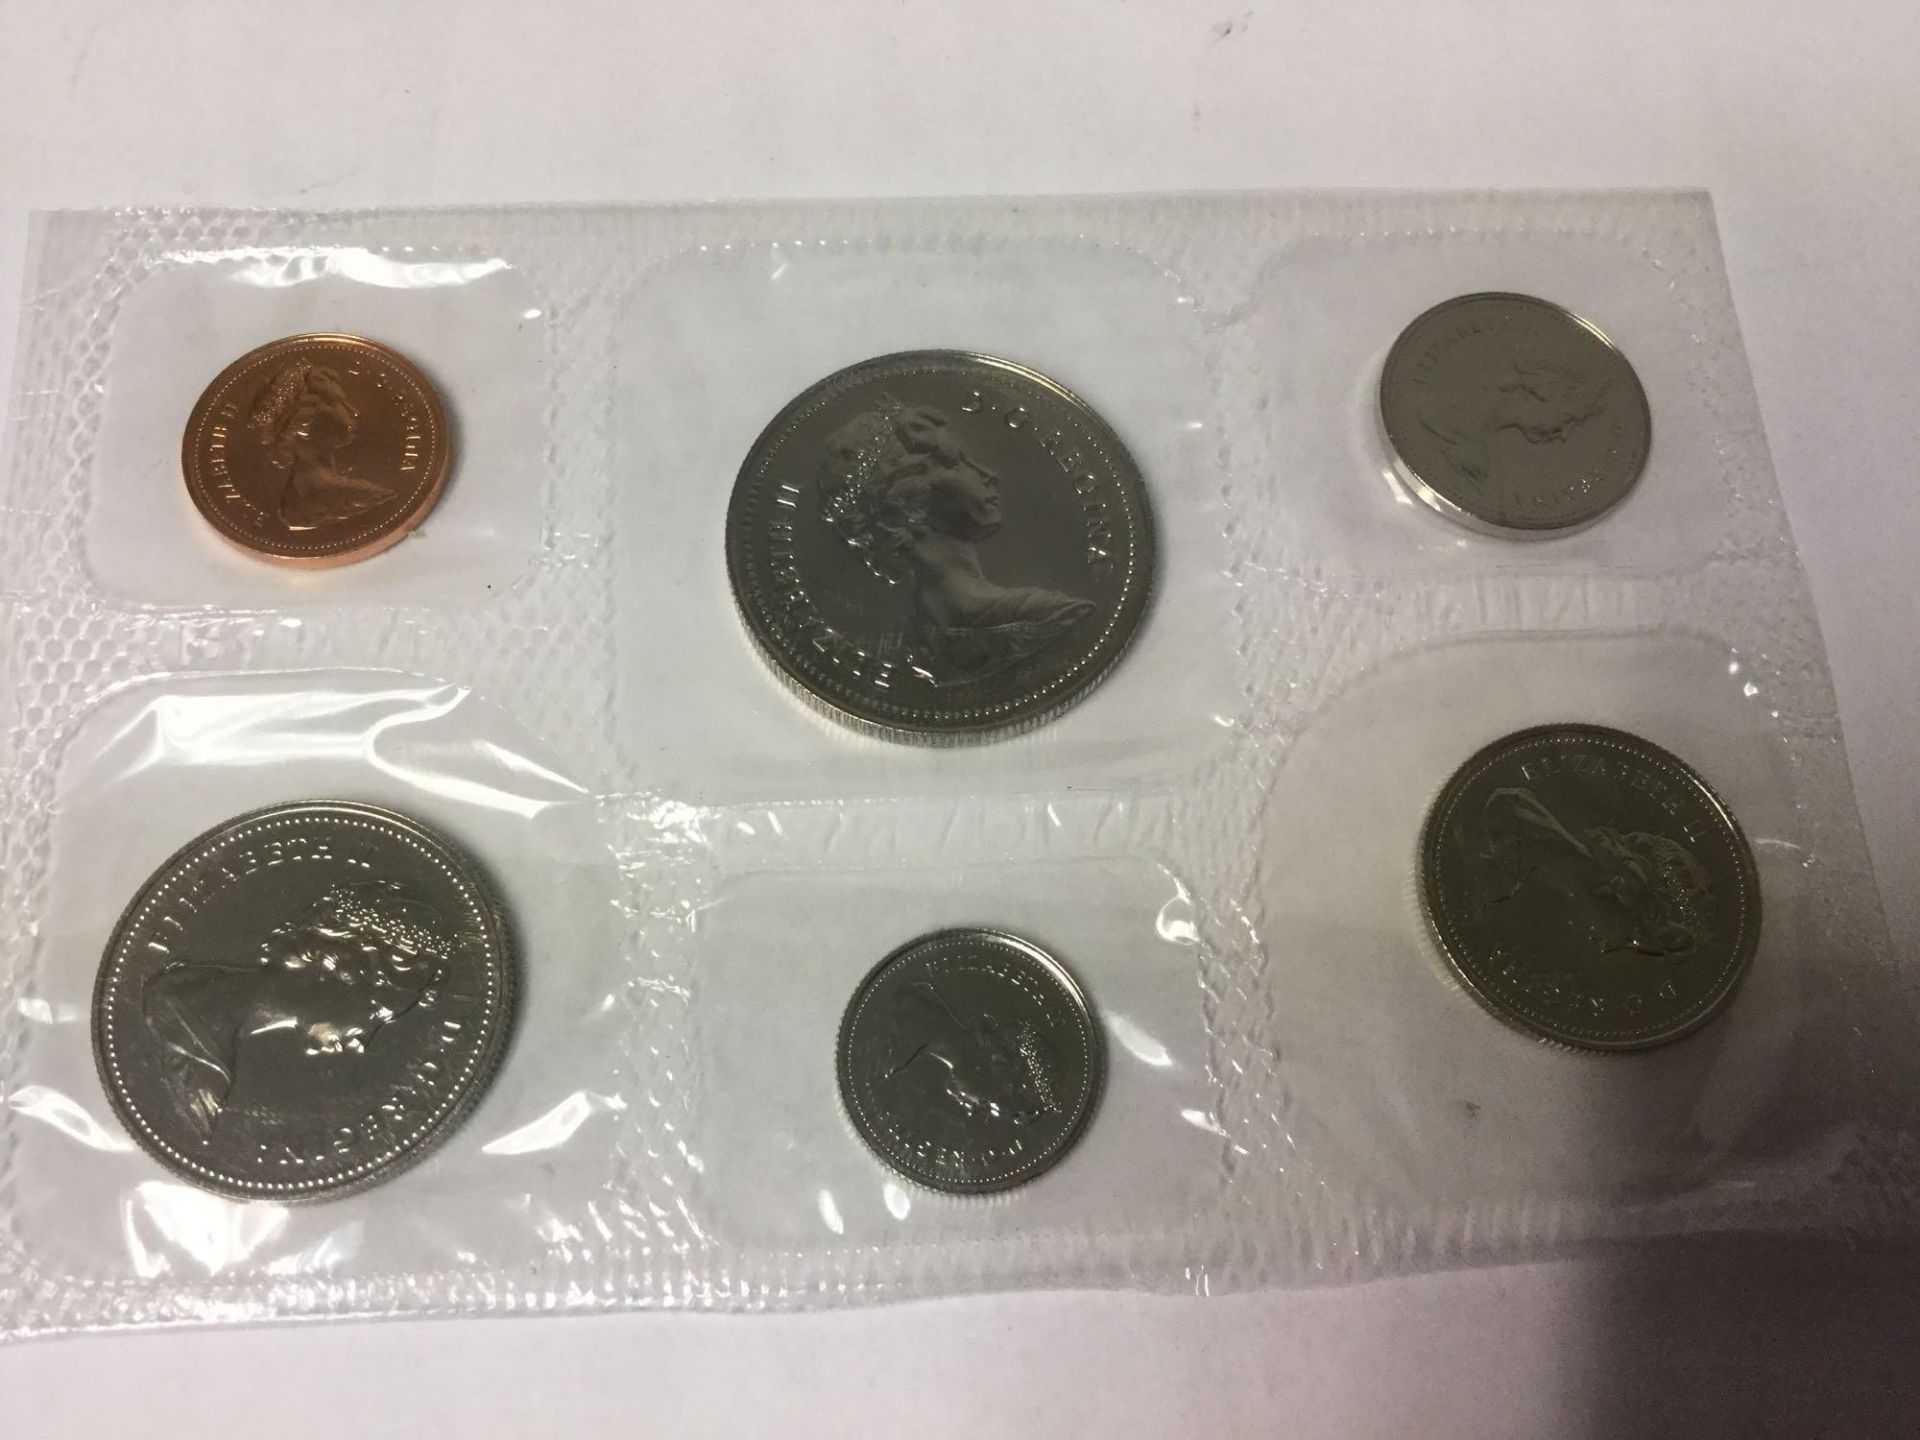 Royal Canadian Mint- 1979 Specimen set with Envelope - Image 3 of 3